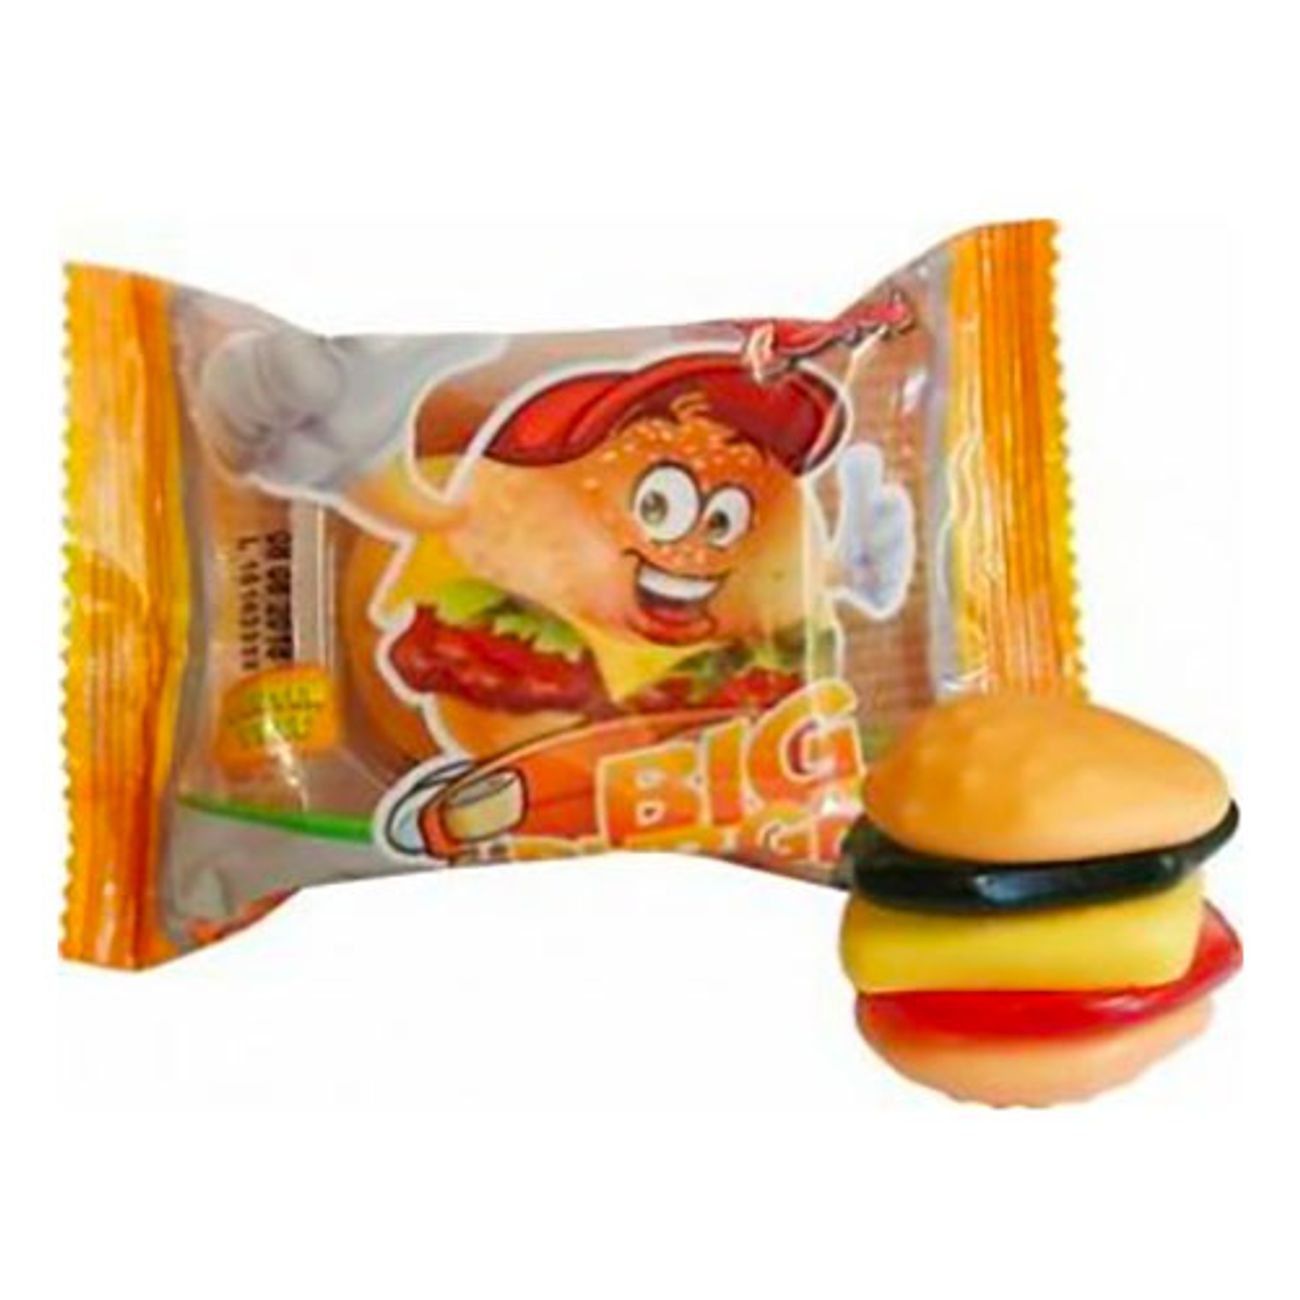 big-burger-godisburgare-2